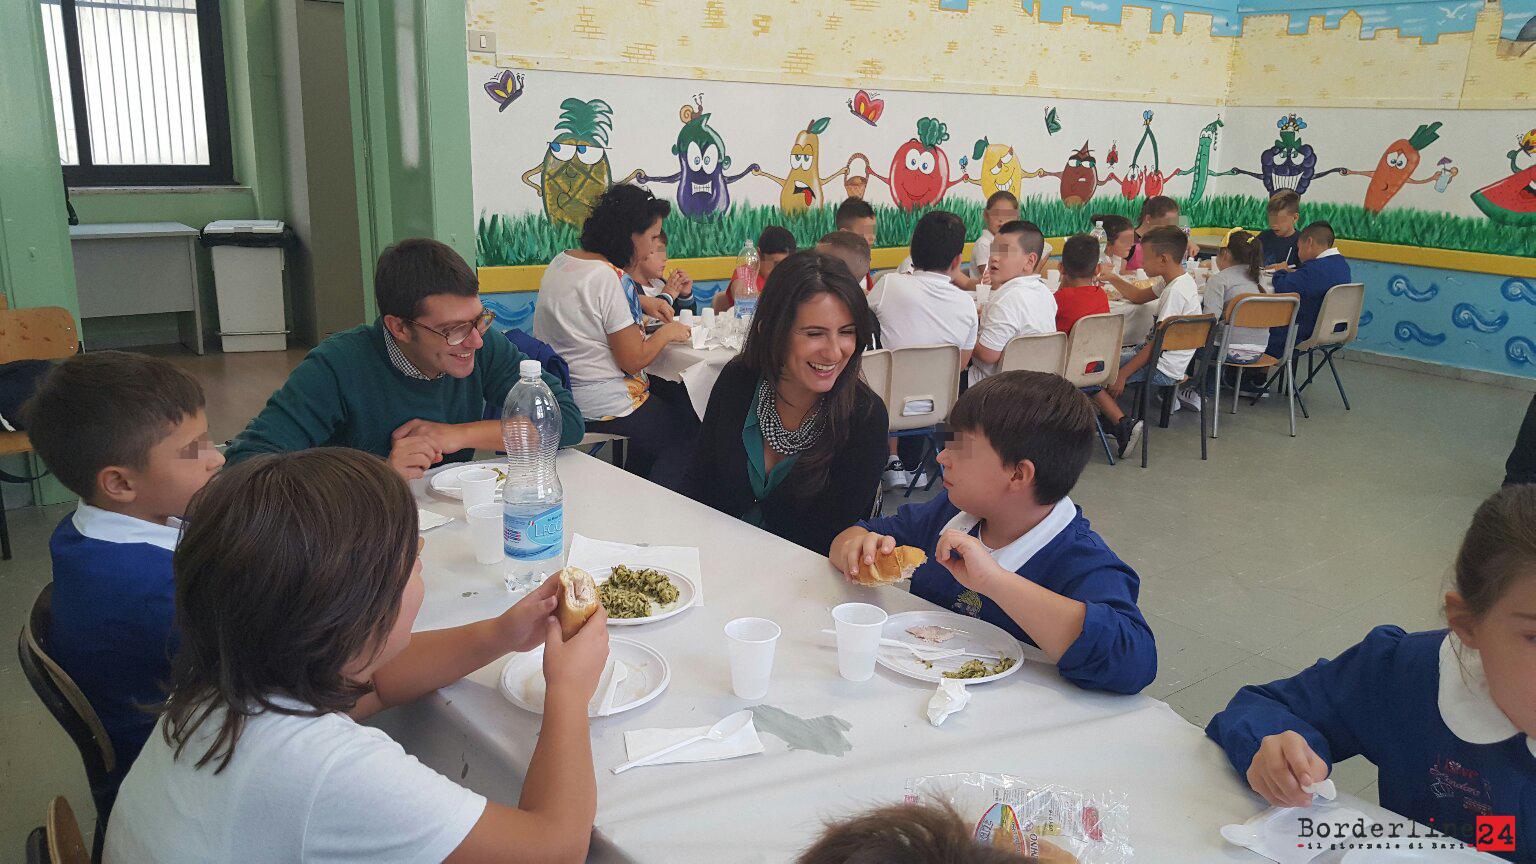 L'assessore Romano a tavola con i bambini della scuola Corridoni